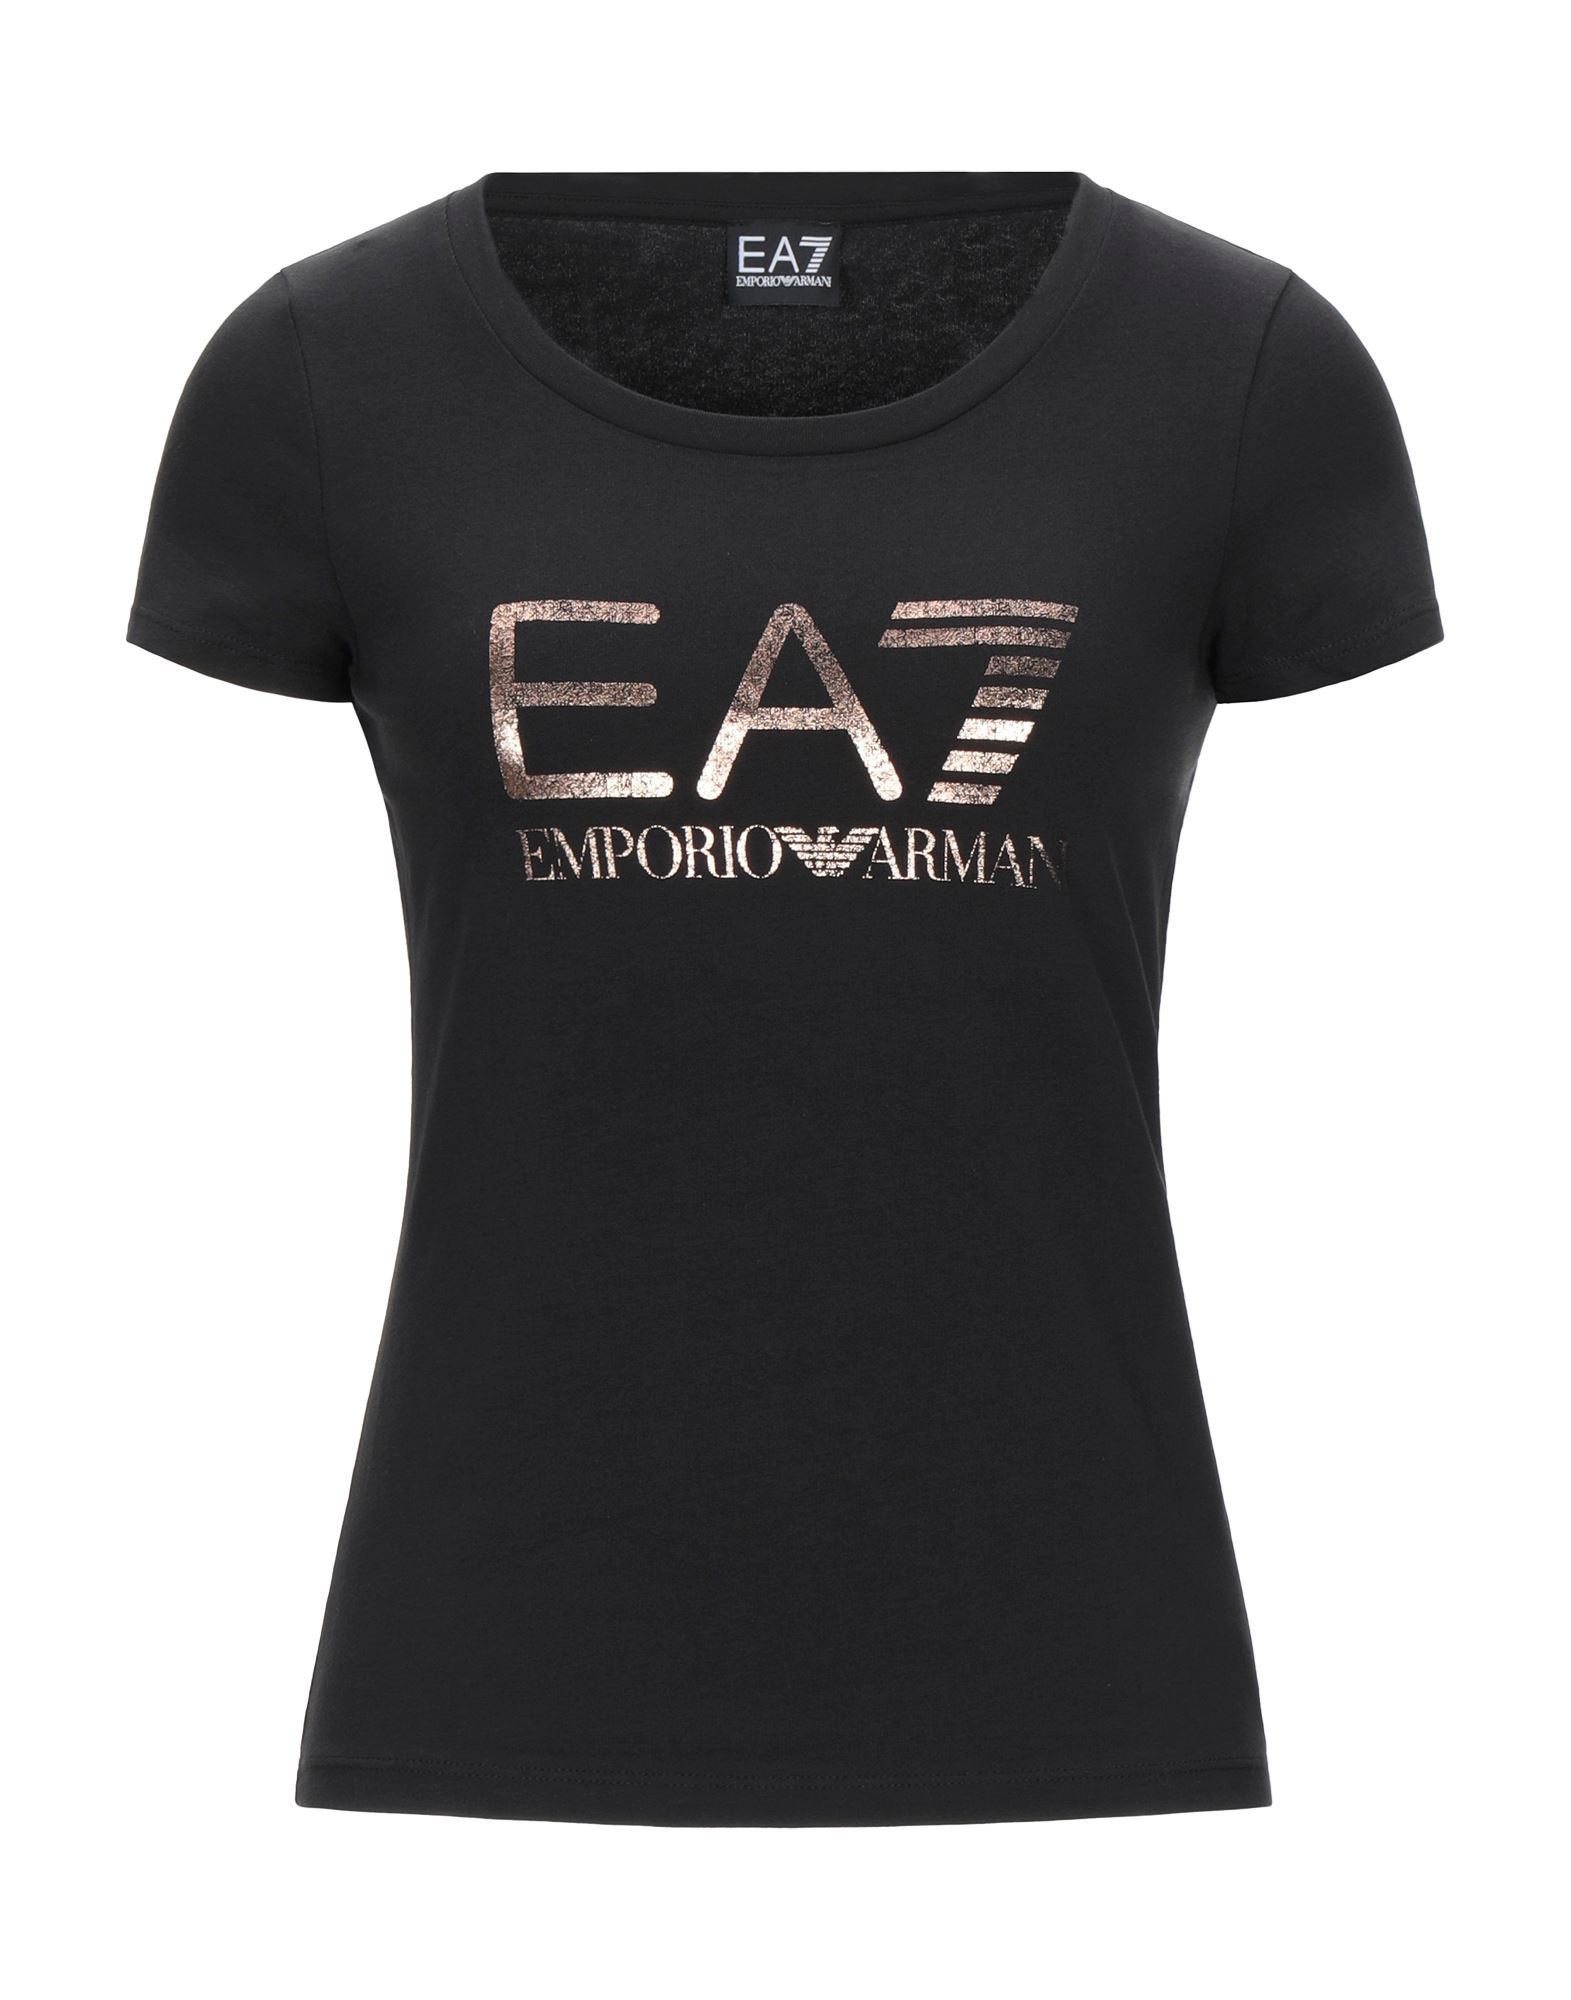 EA7 T-shirts - Item 12537618